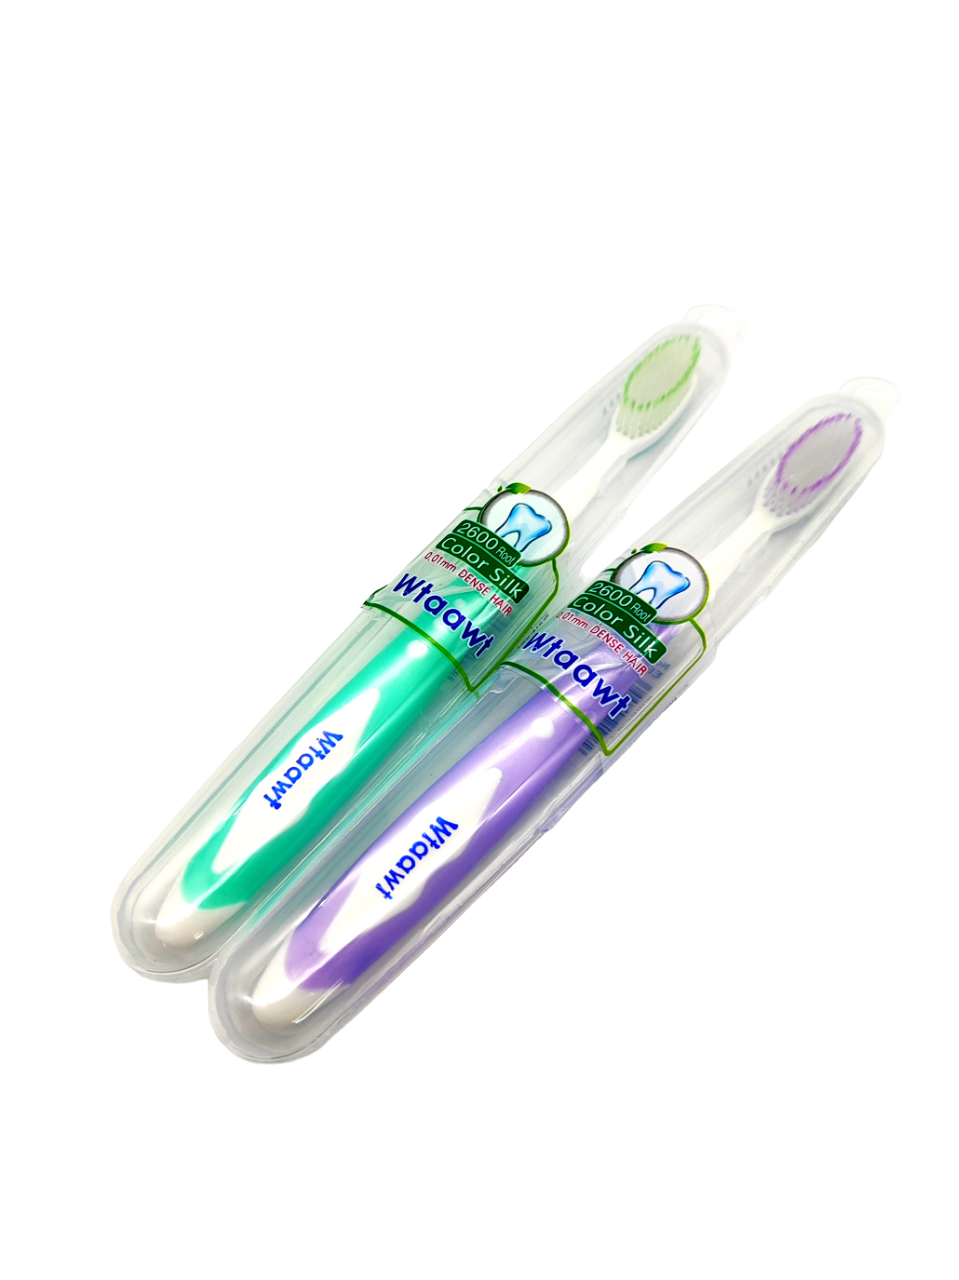 Комплект зубных щеток Wtaawt в футляре Цвет зеленый-фиолетовый 2 шт. зубная щетка для зубных протезов tepe denture цвет в ассортименте